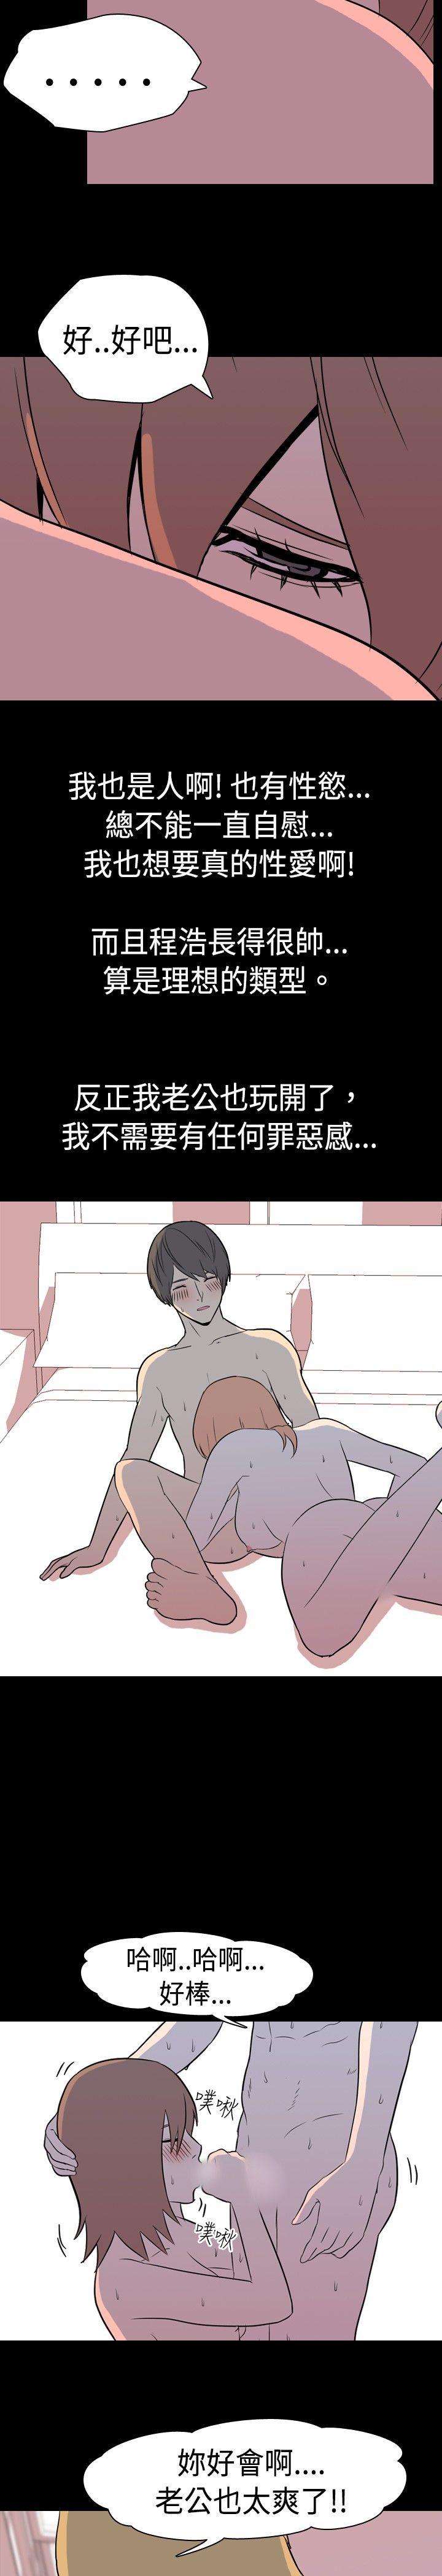 韩国污漫画 我的色色夜說 第6话-伴侣的淫谈夜说(中) 5